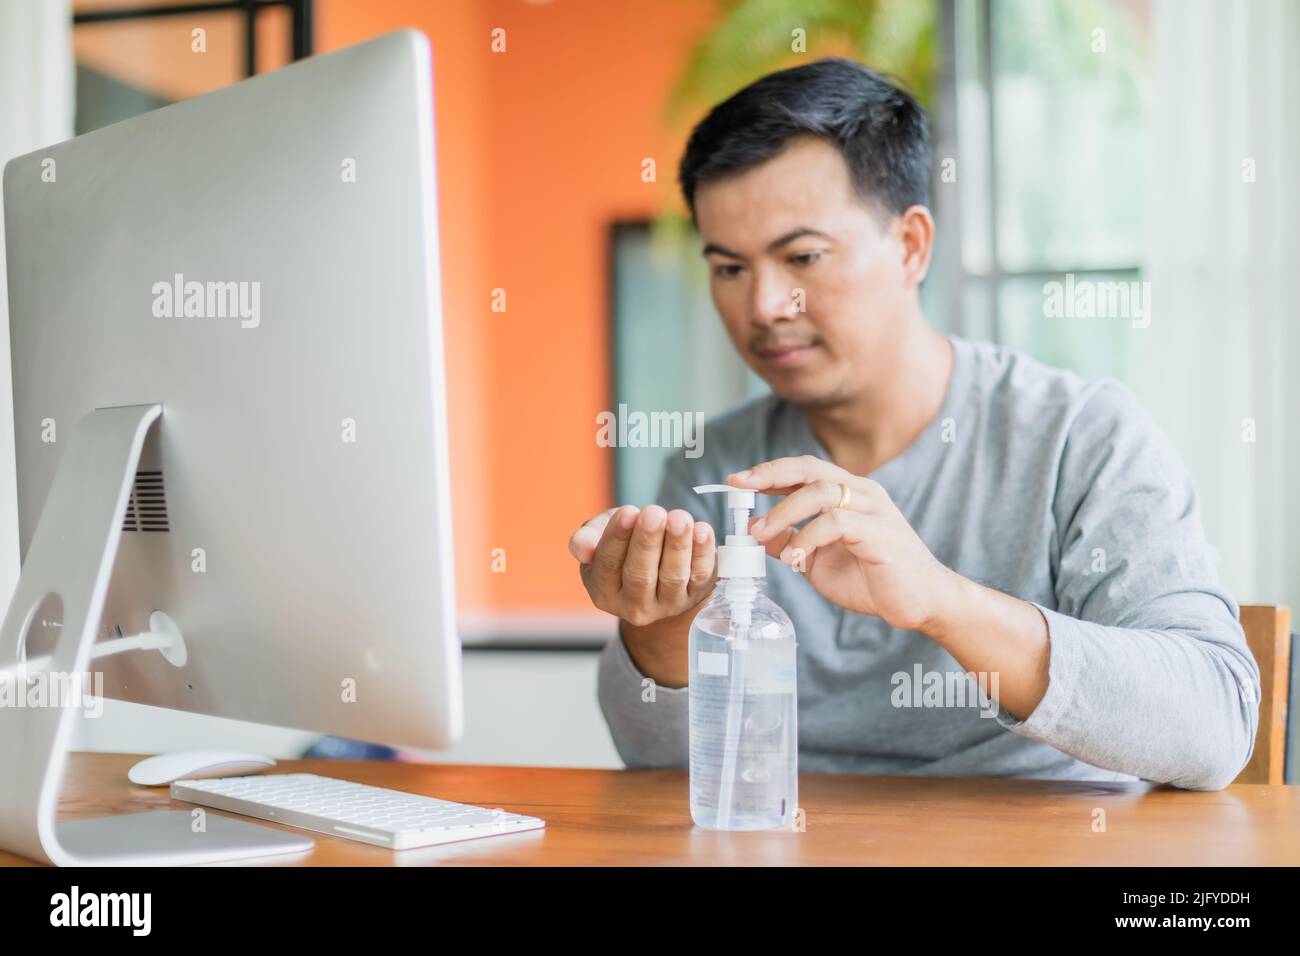 Uomo asiatico che usa il gel igienizzante per le mani per pulire la sua mano, lavorare da casa e sano concetto Foto Stock